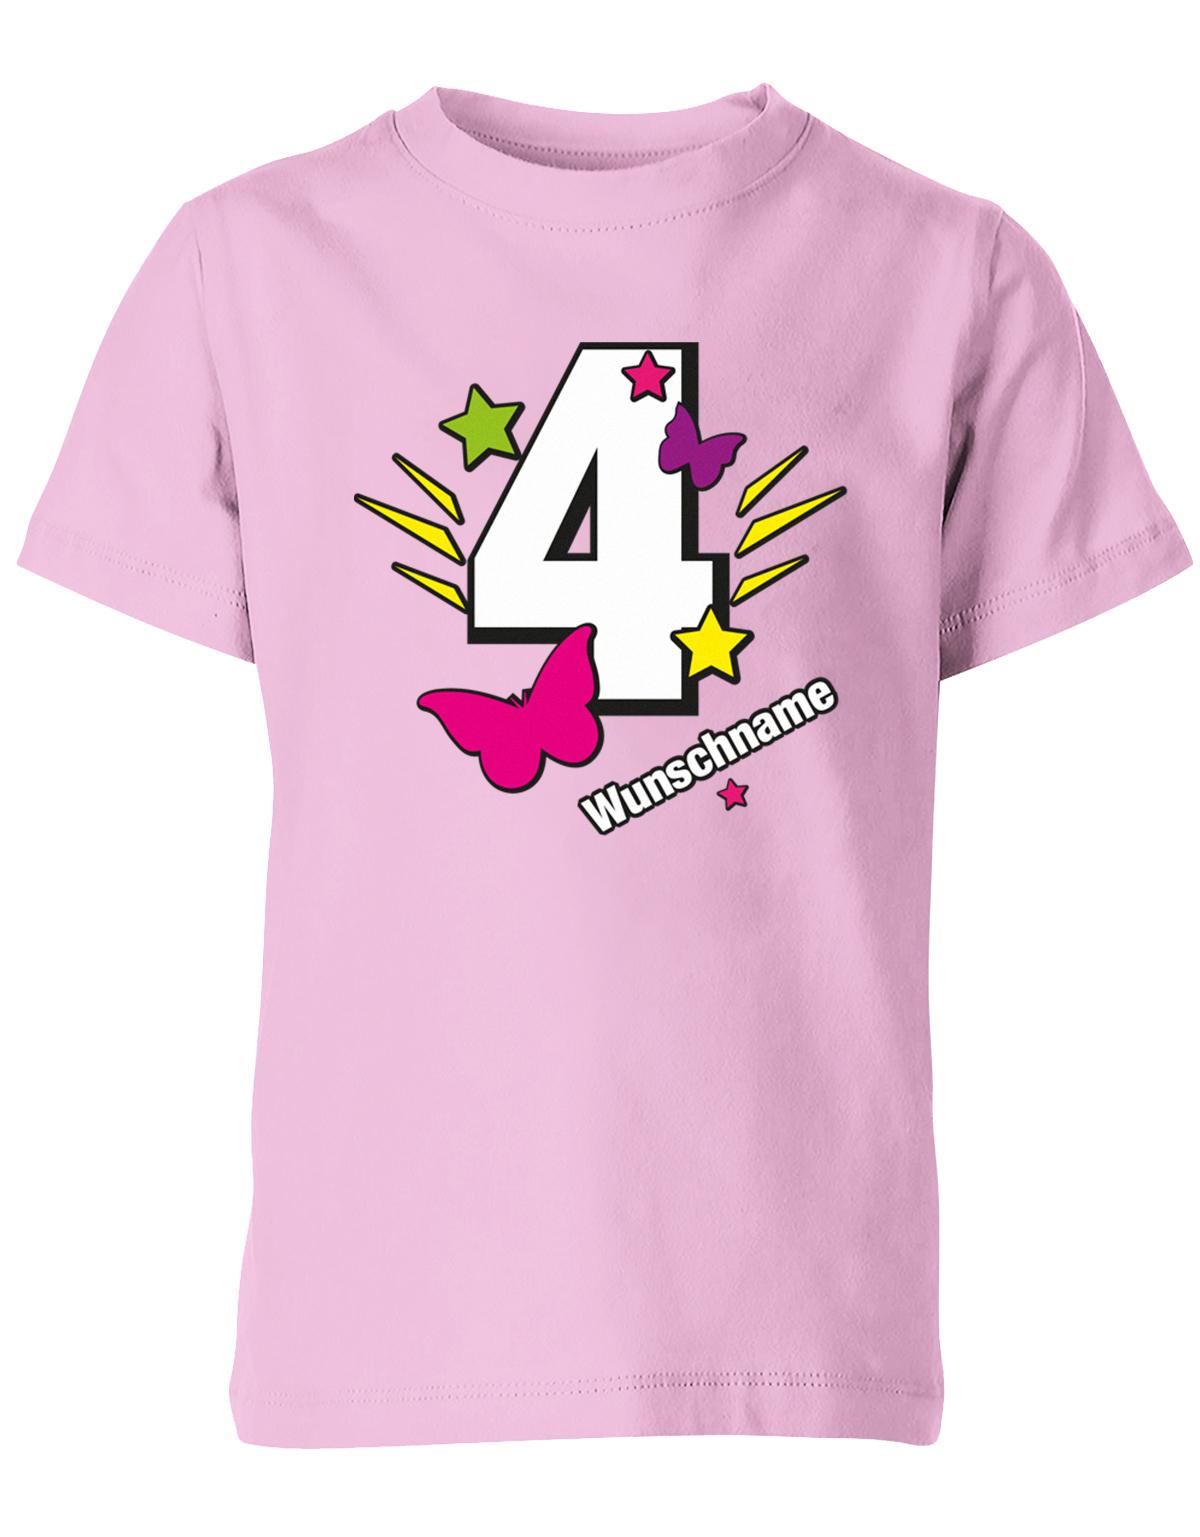 schmetterling-sterne-4-geburtstag-wunschname-kinder-shirt-rosa